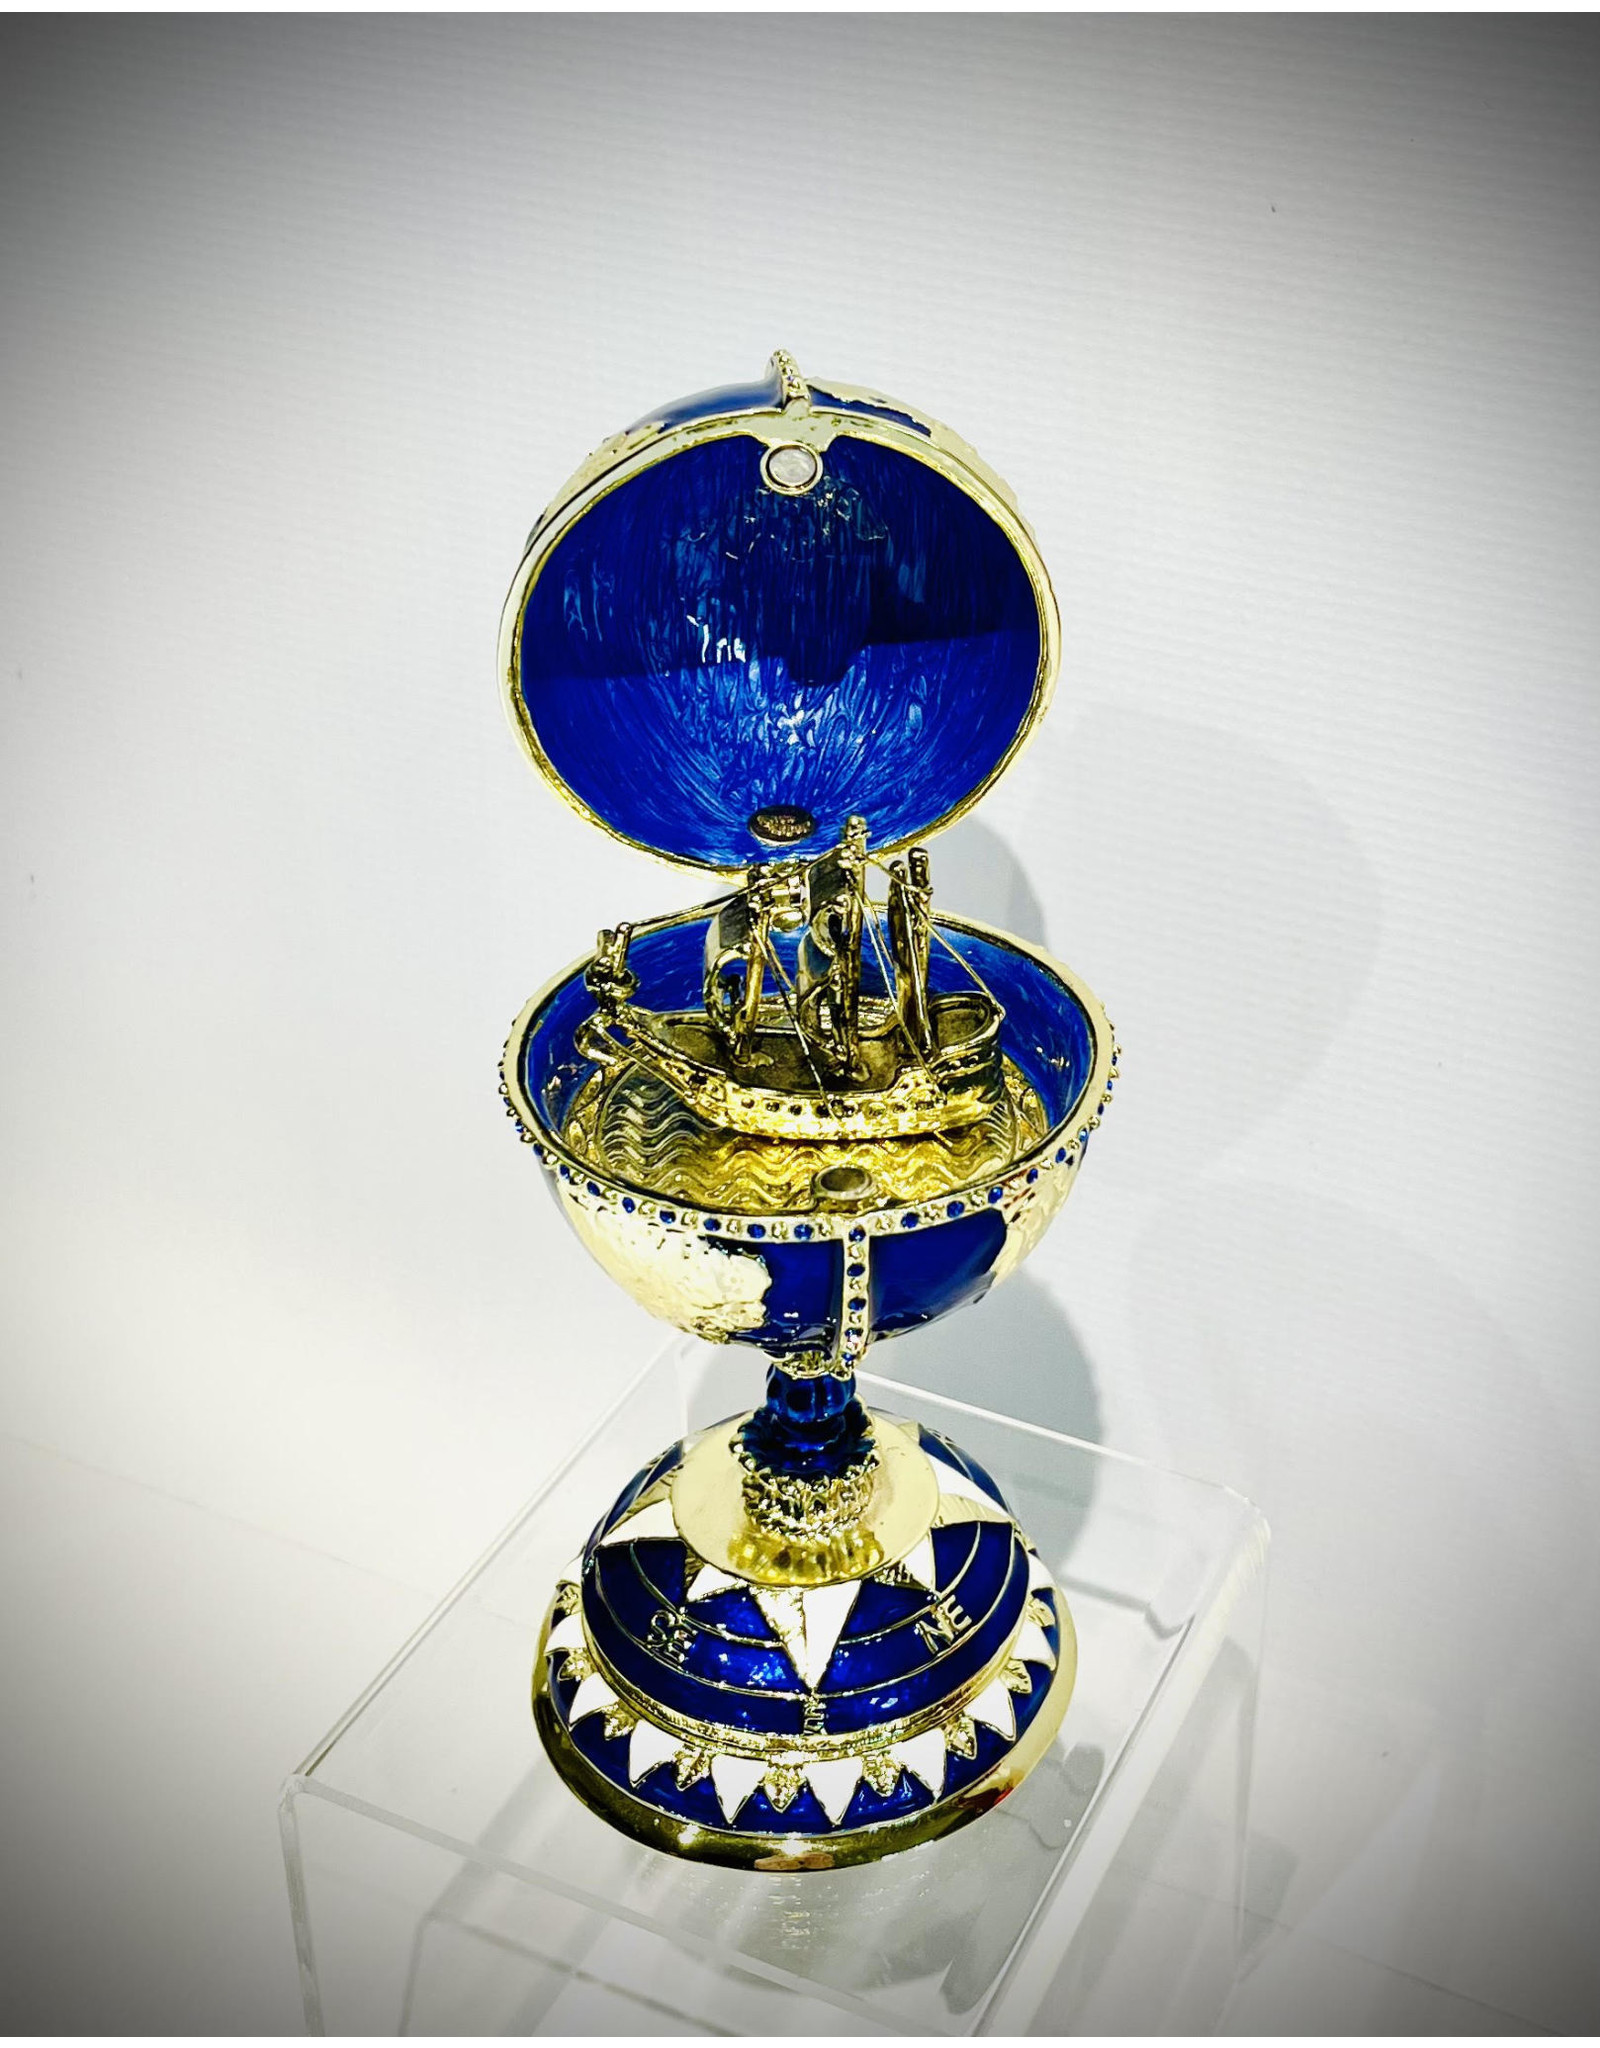 Globe Fabergé Egg with Sailing Ship